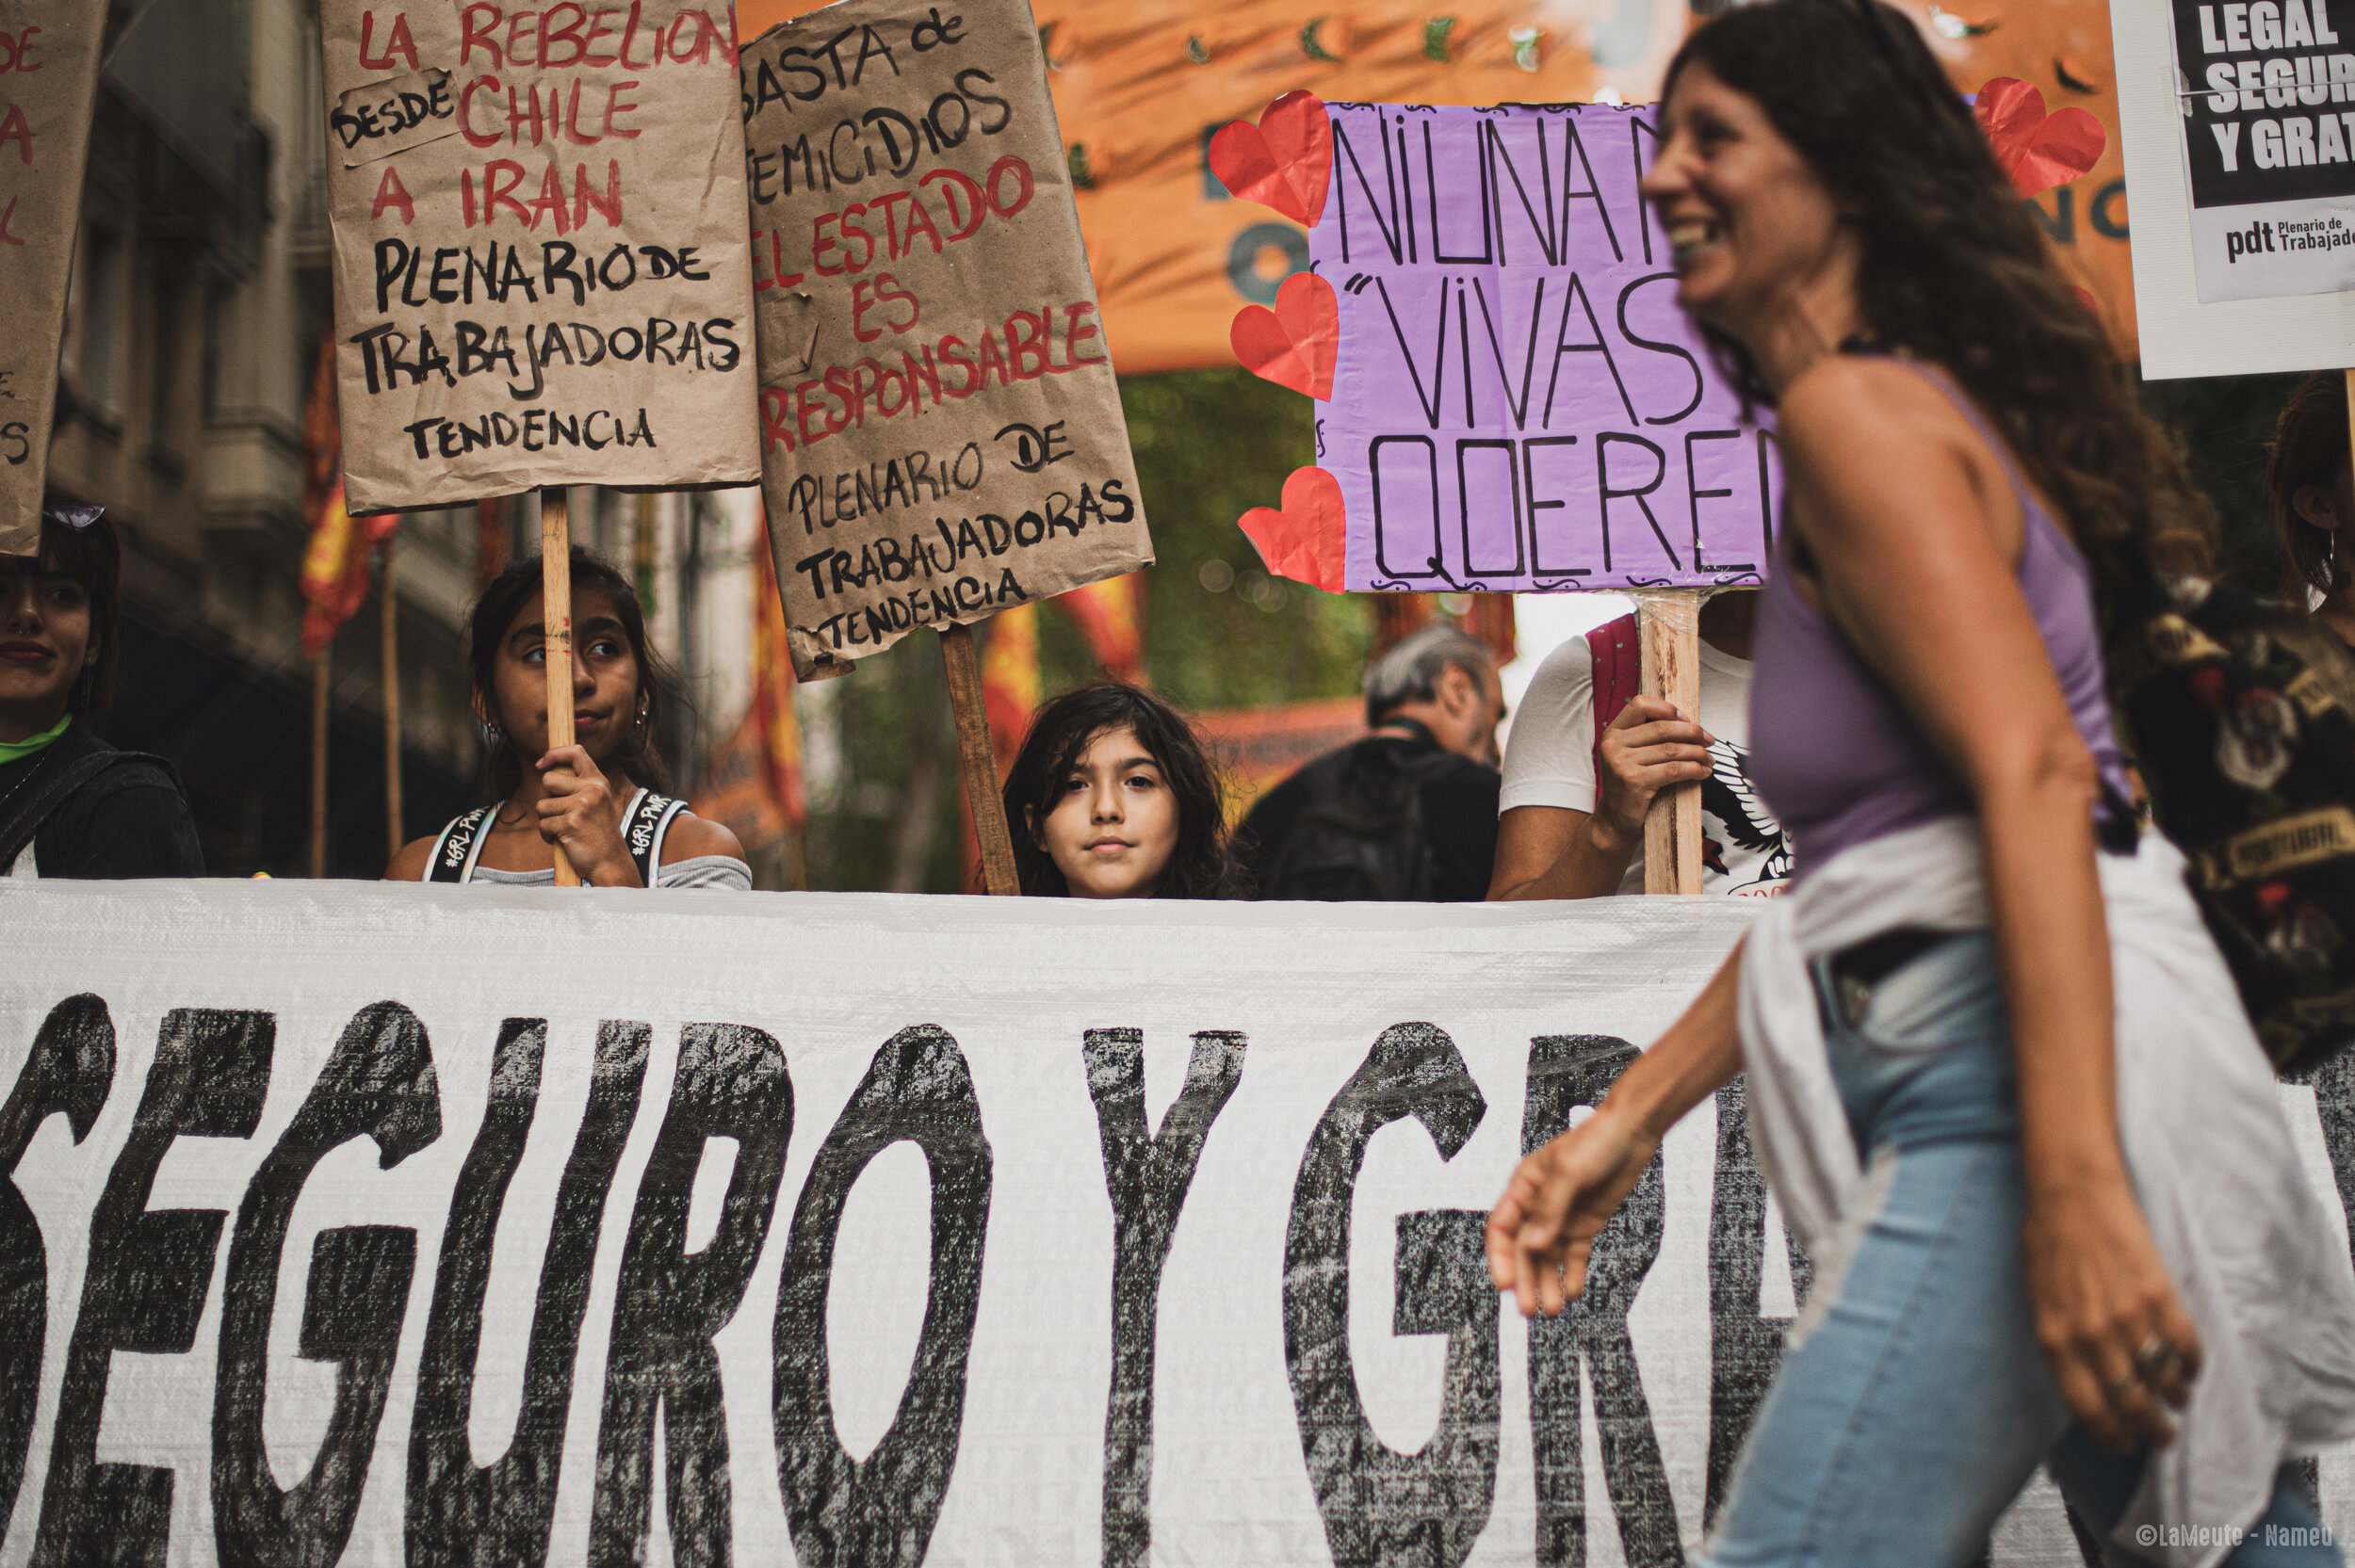   Des jeunes militantes tiennent des pancartes « Stop féminicides », « L'Etat est responsable ».  ©LaMeute – Nameu 